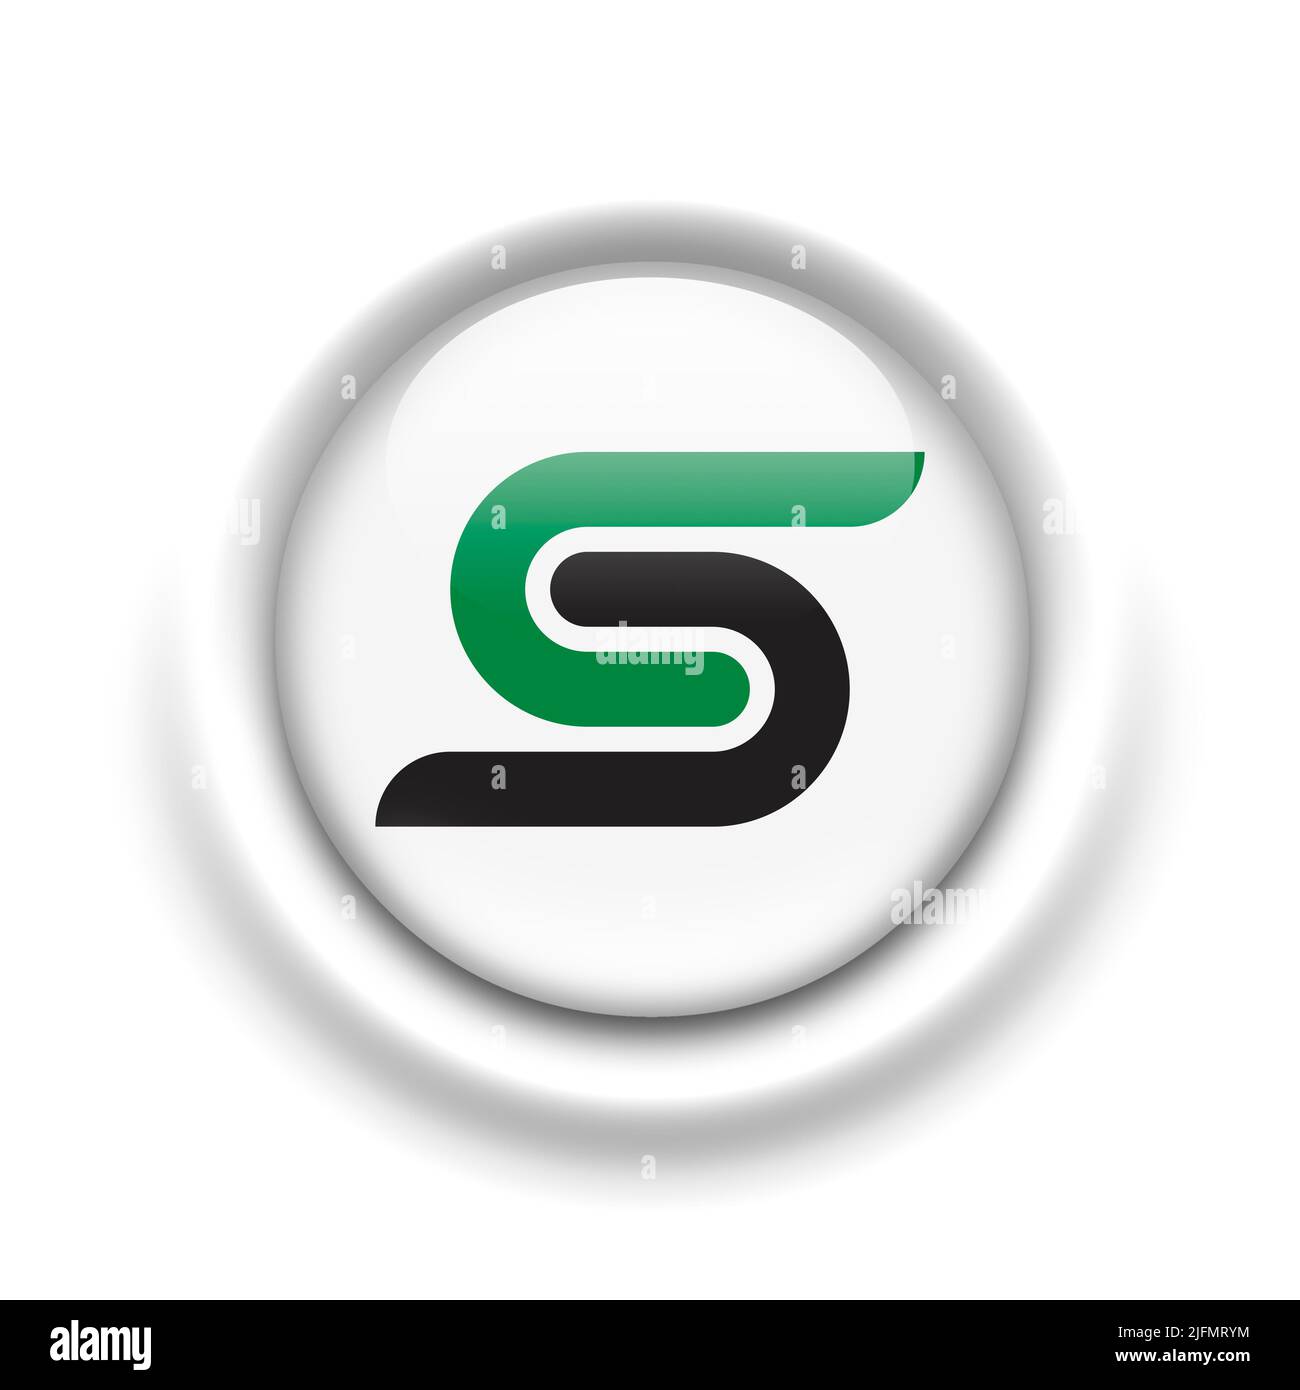 Saddle Creek logo Stock Photo